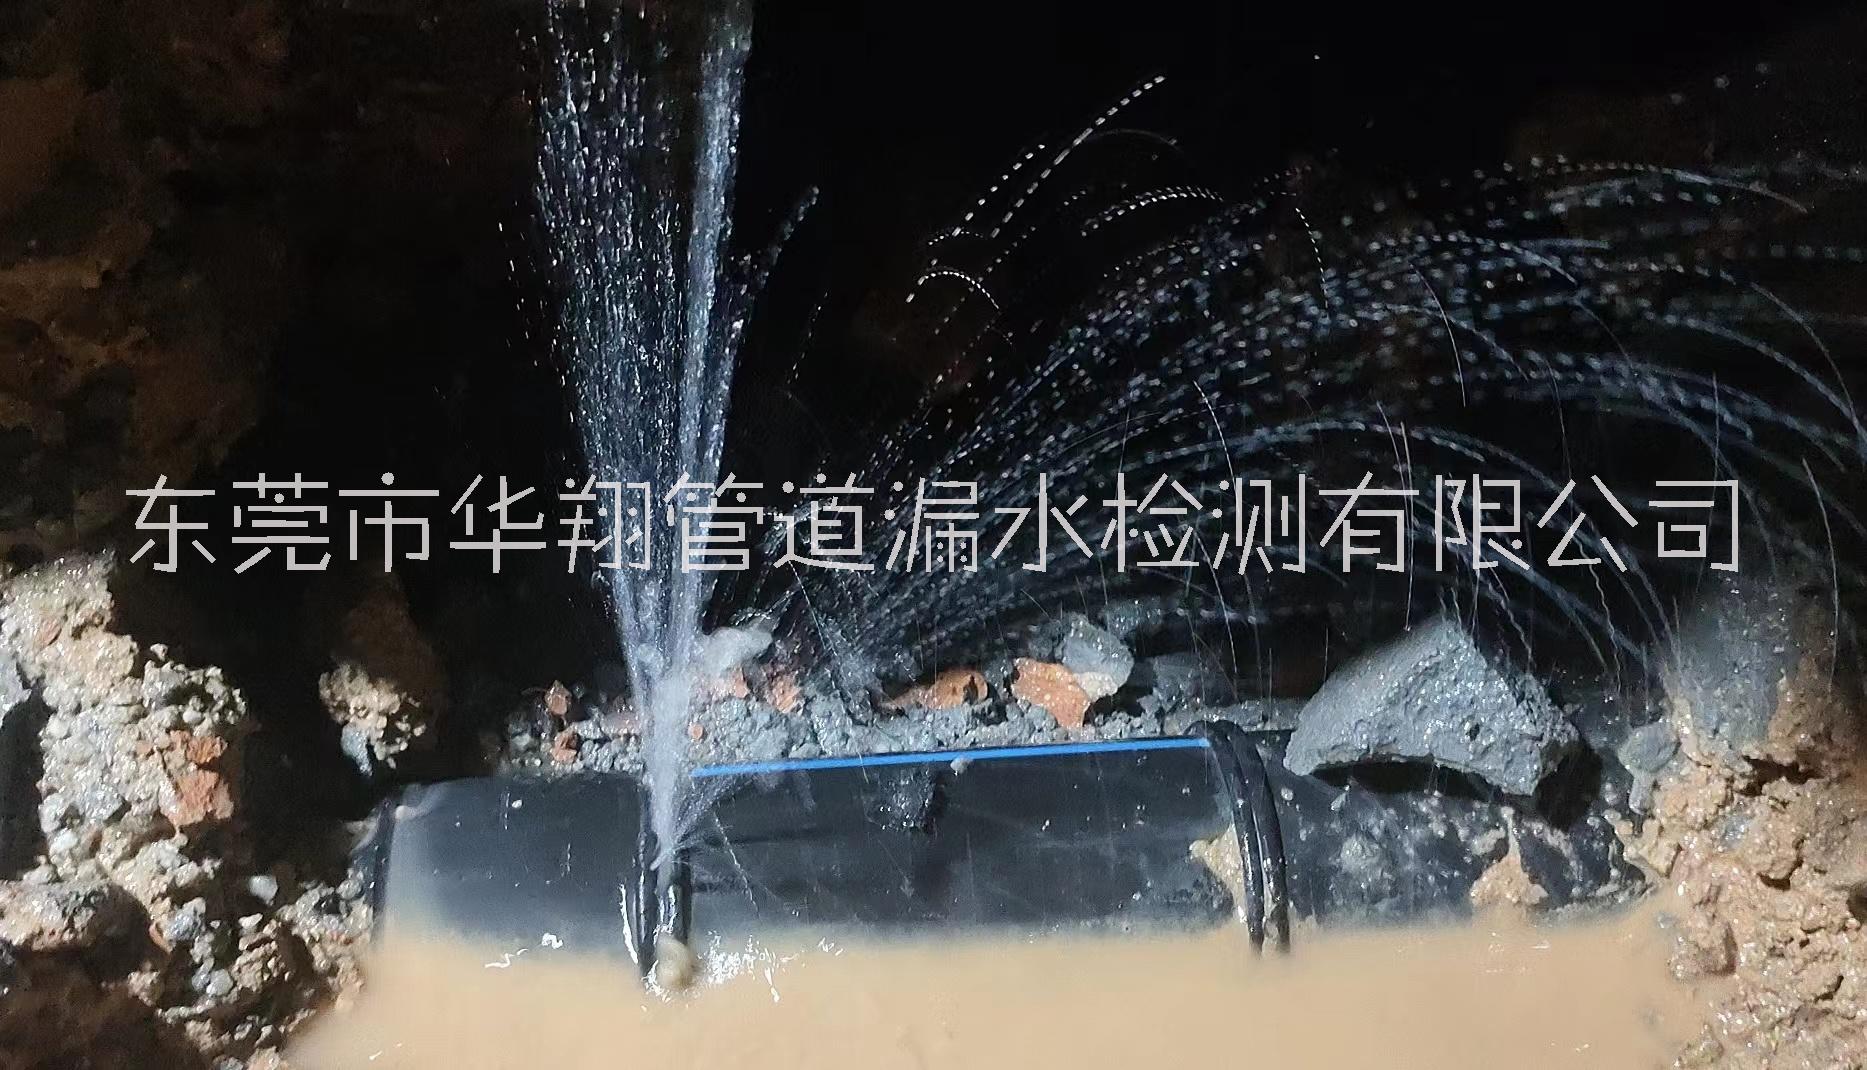 东莞市消防单位供水管普查探测厂家